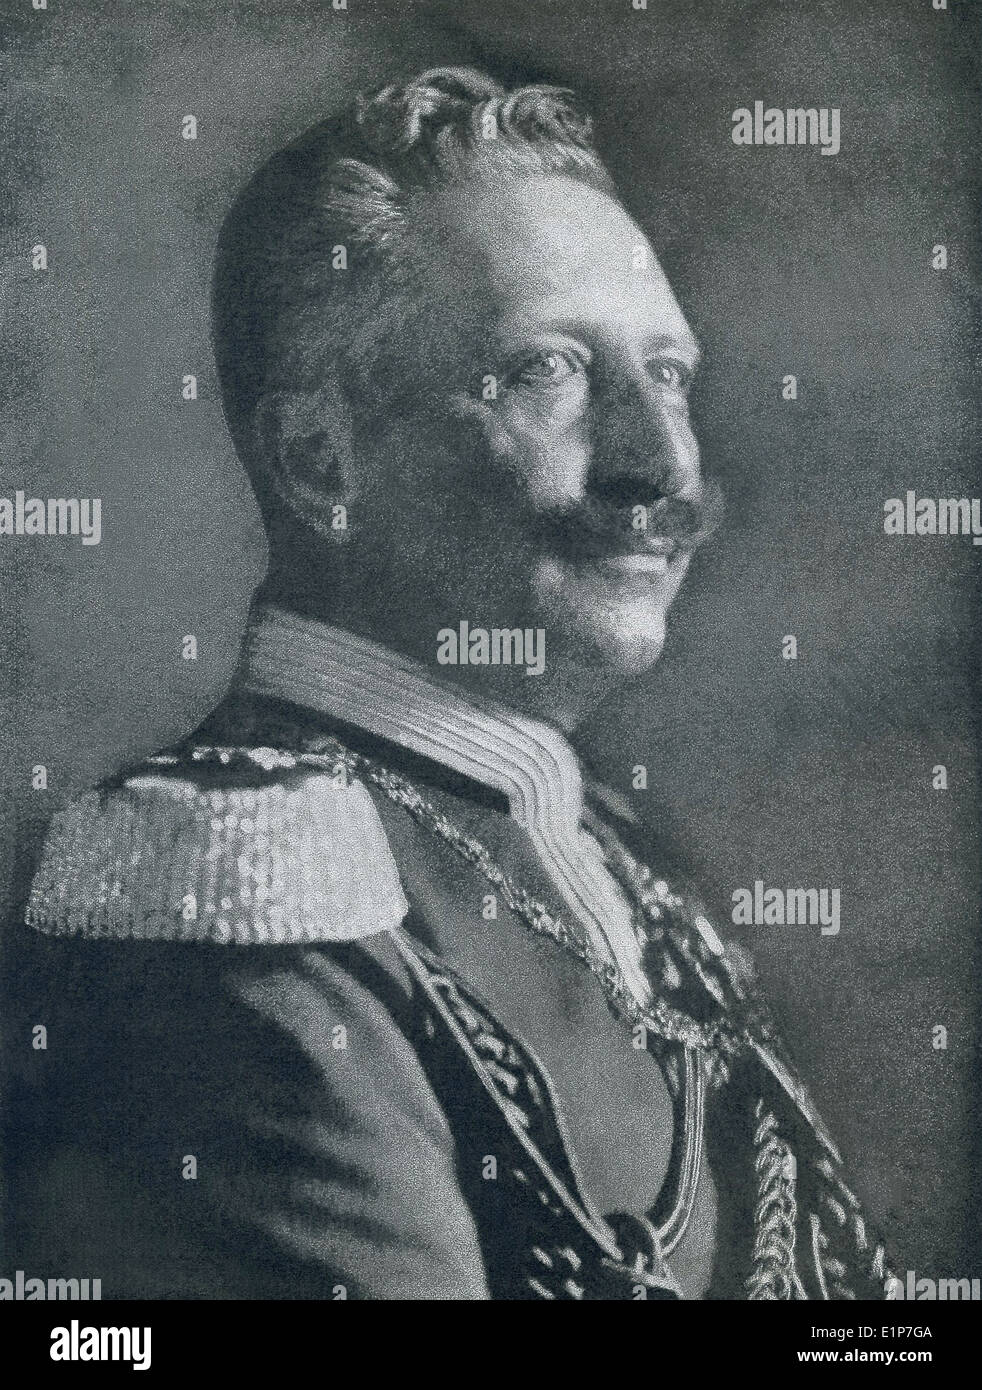 Guglielmo II era l'ultimo imperatore tedesco e re di Prussia. Egli ha governato dal 1888 al 1918. Foto Stock